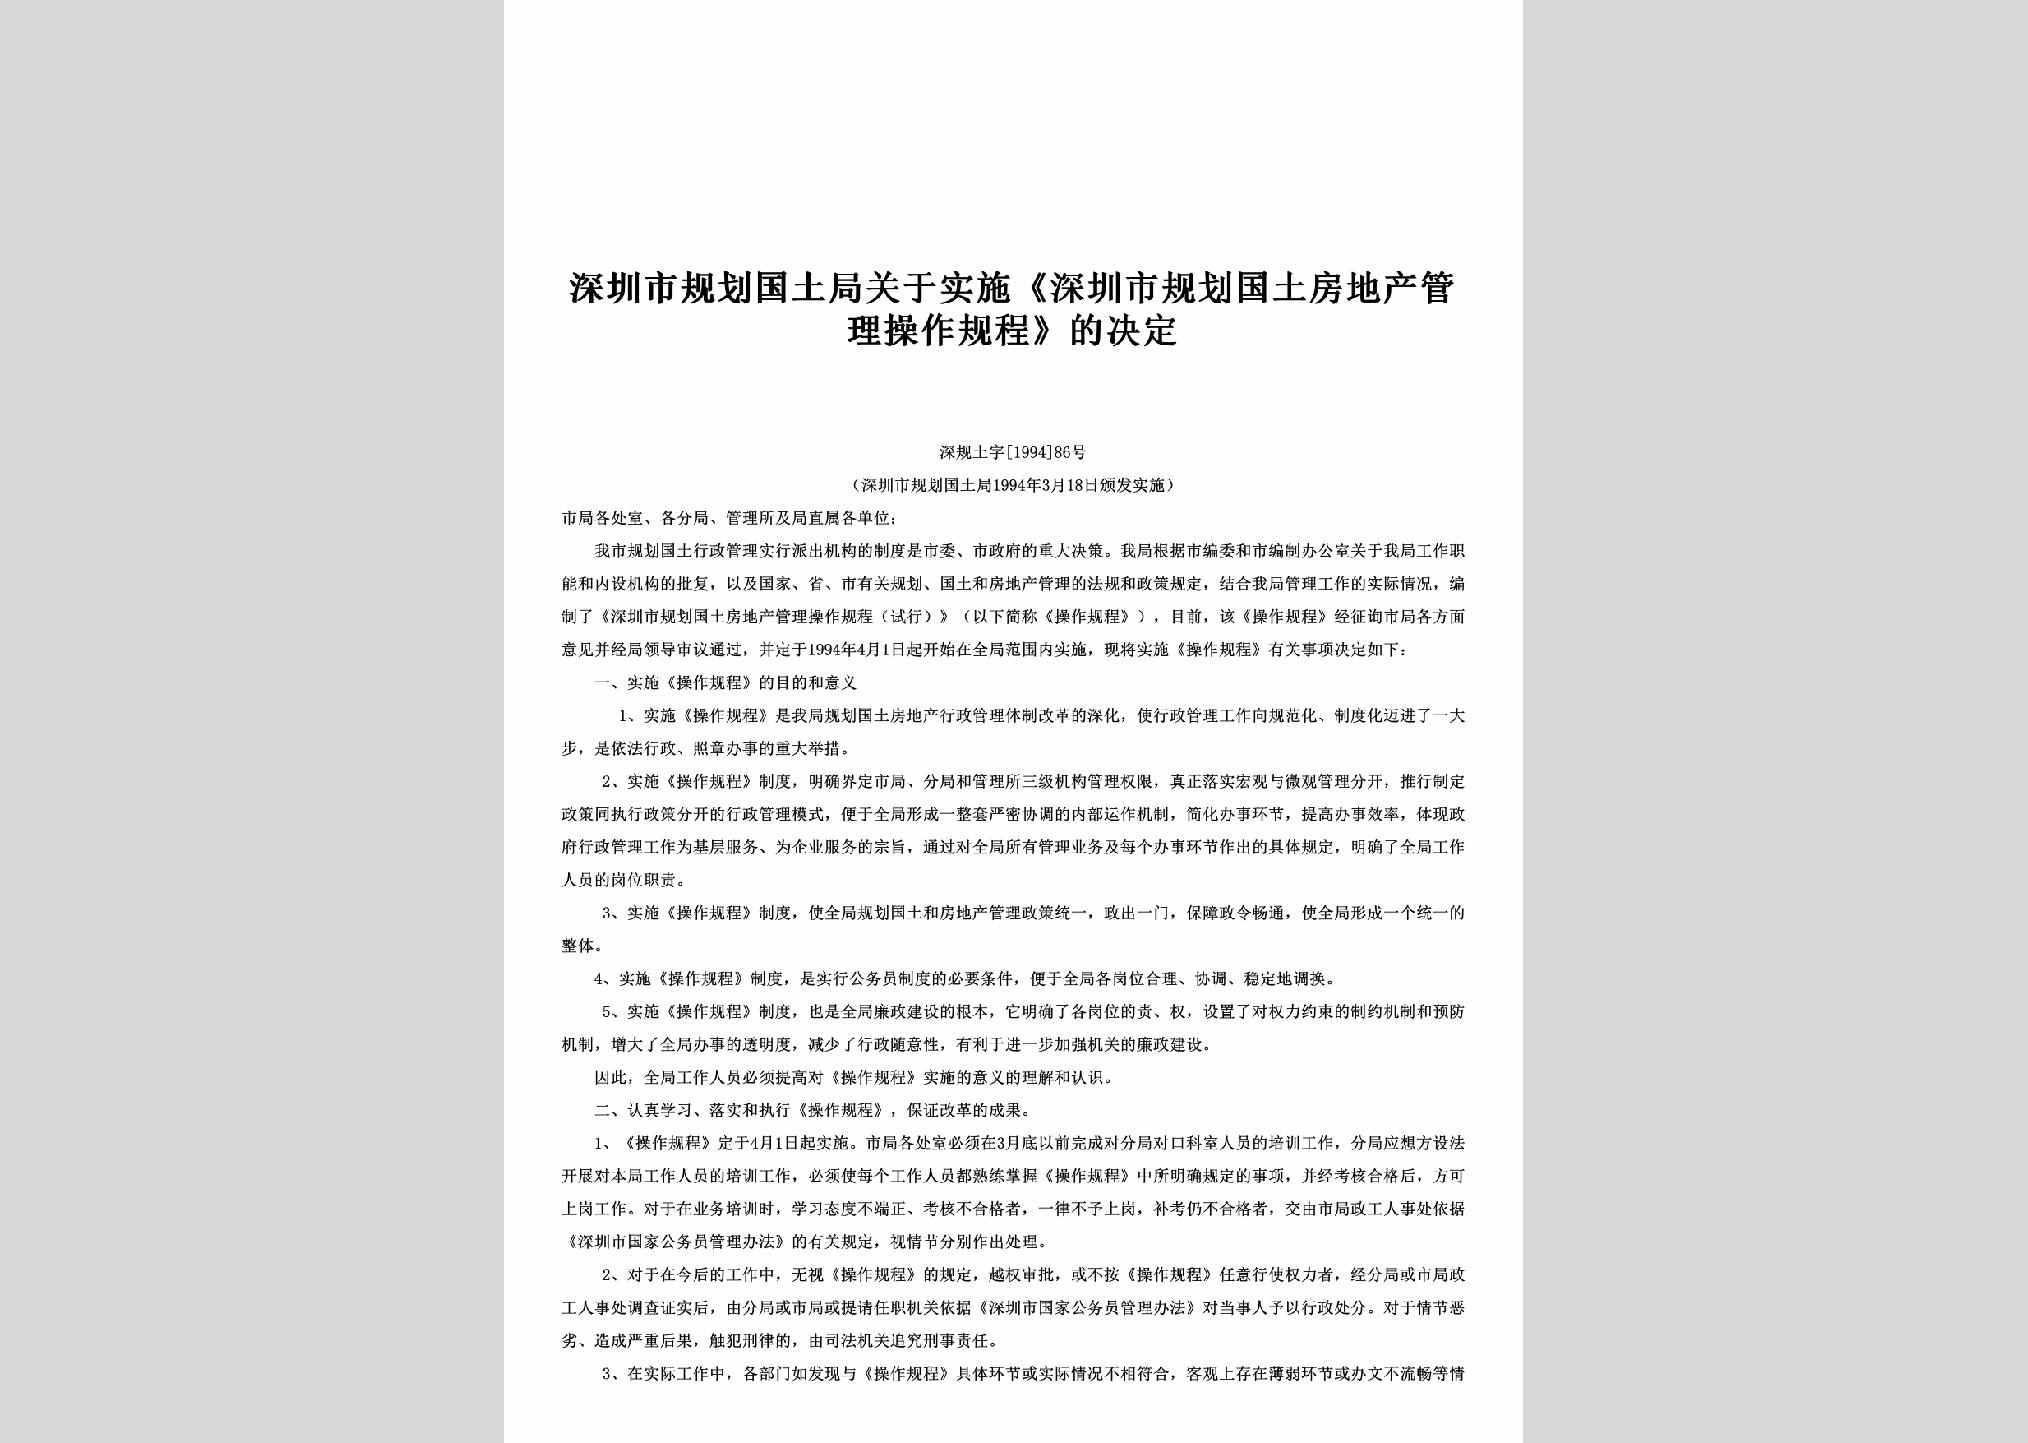 深规土字[1994]86号：关于实施《深圳市规划国土房地产管理操作规程》的决定